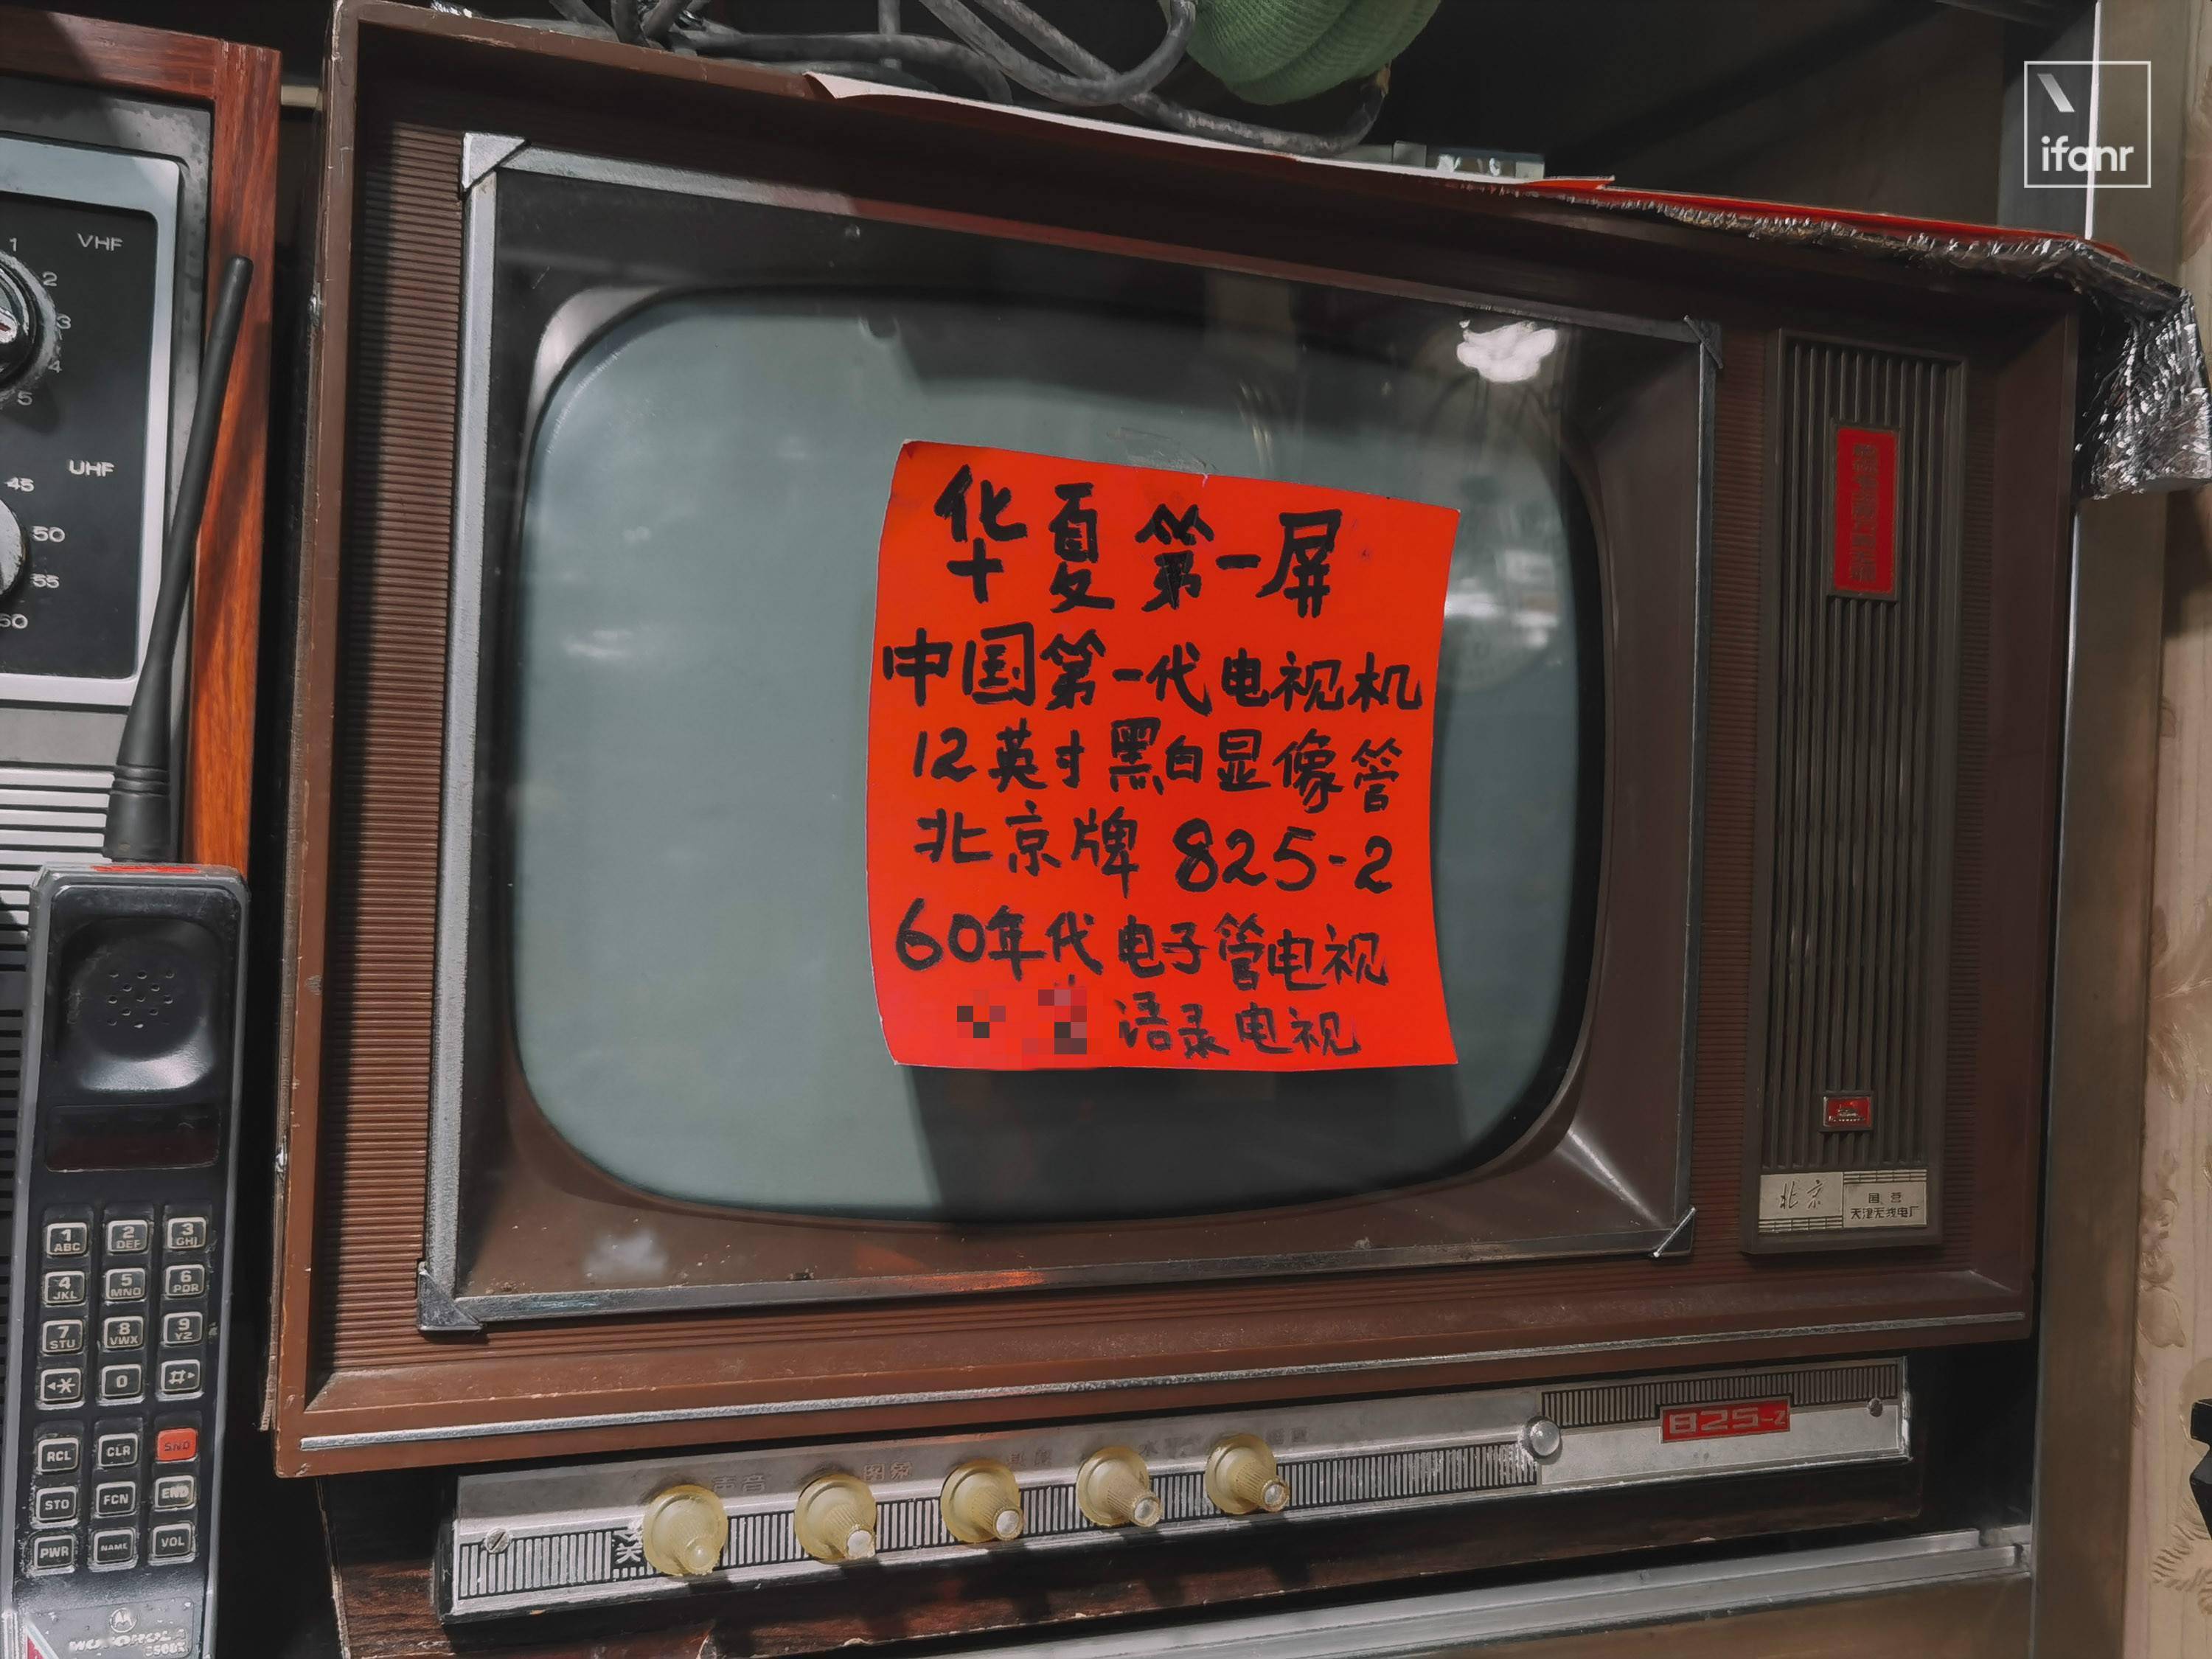 来自 60 年代的「北京牌」电子管电视机